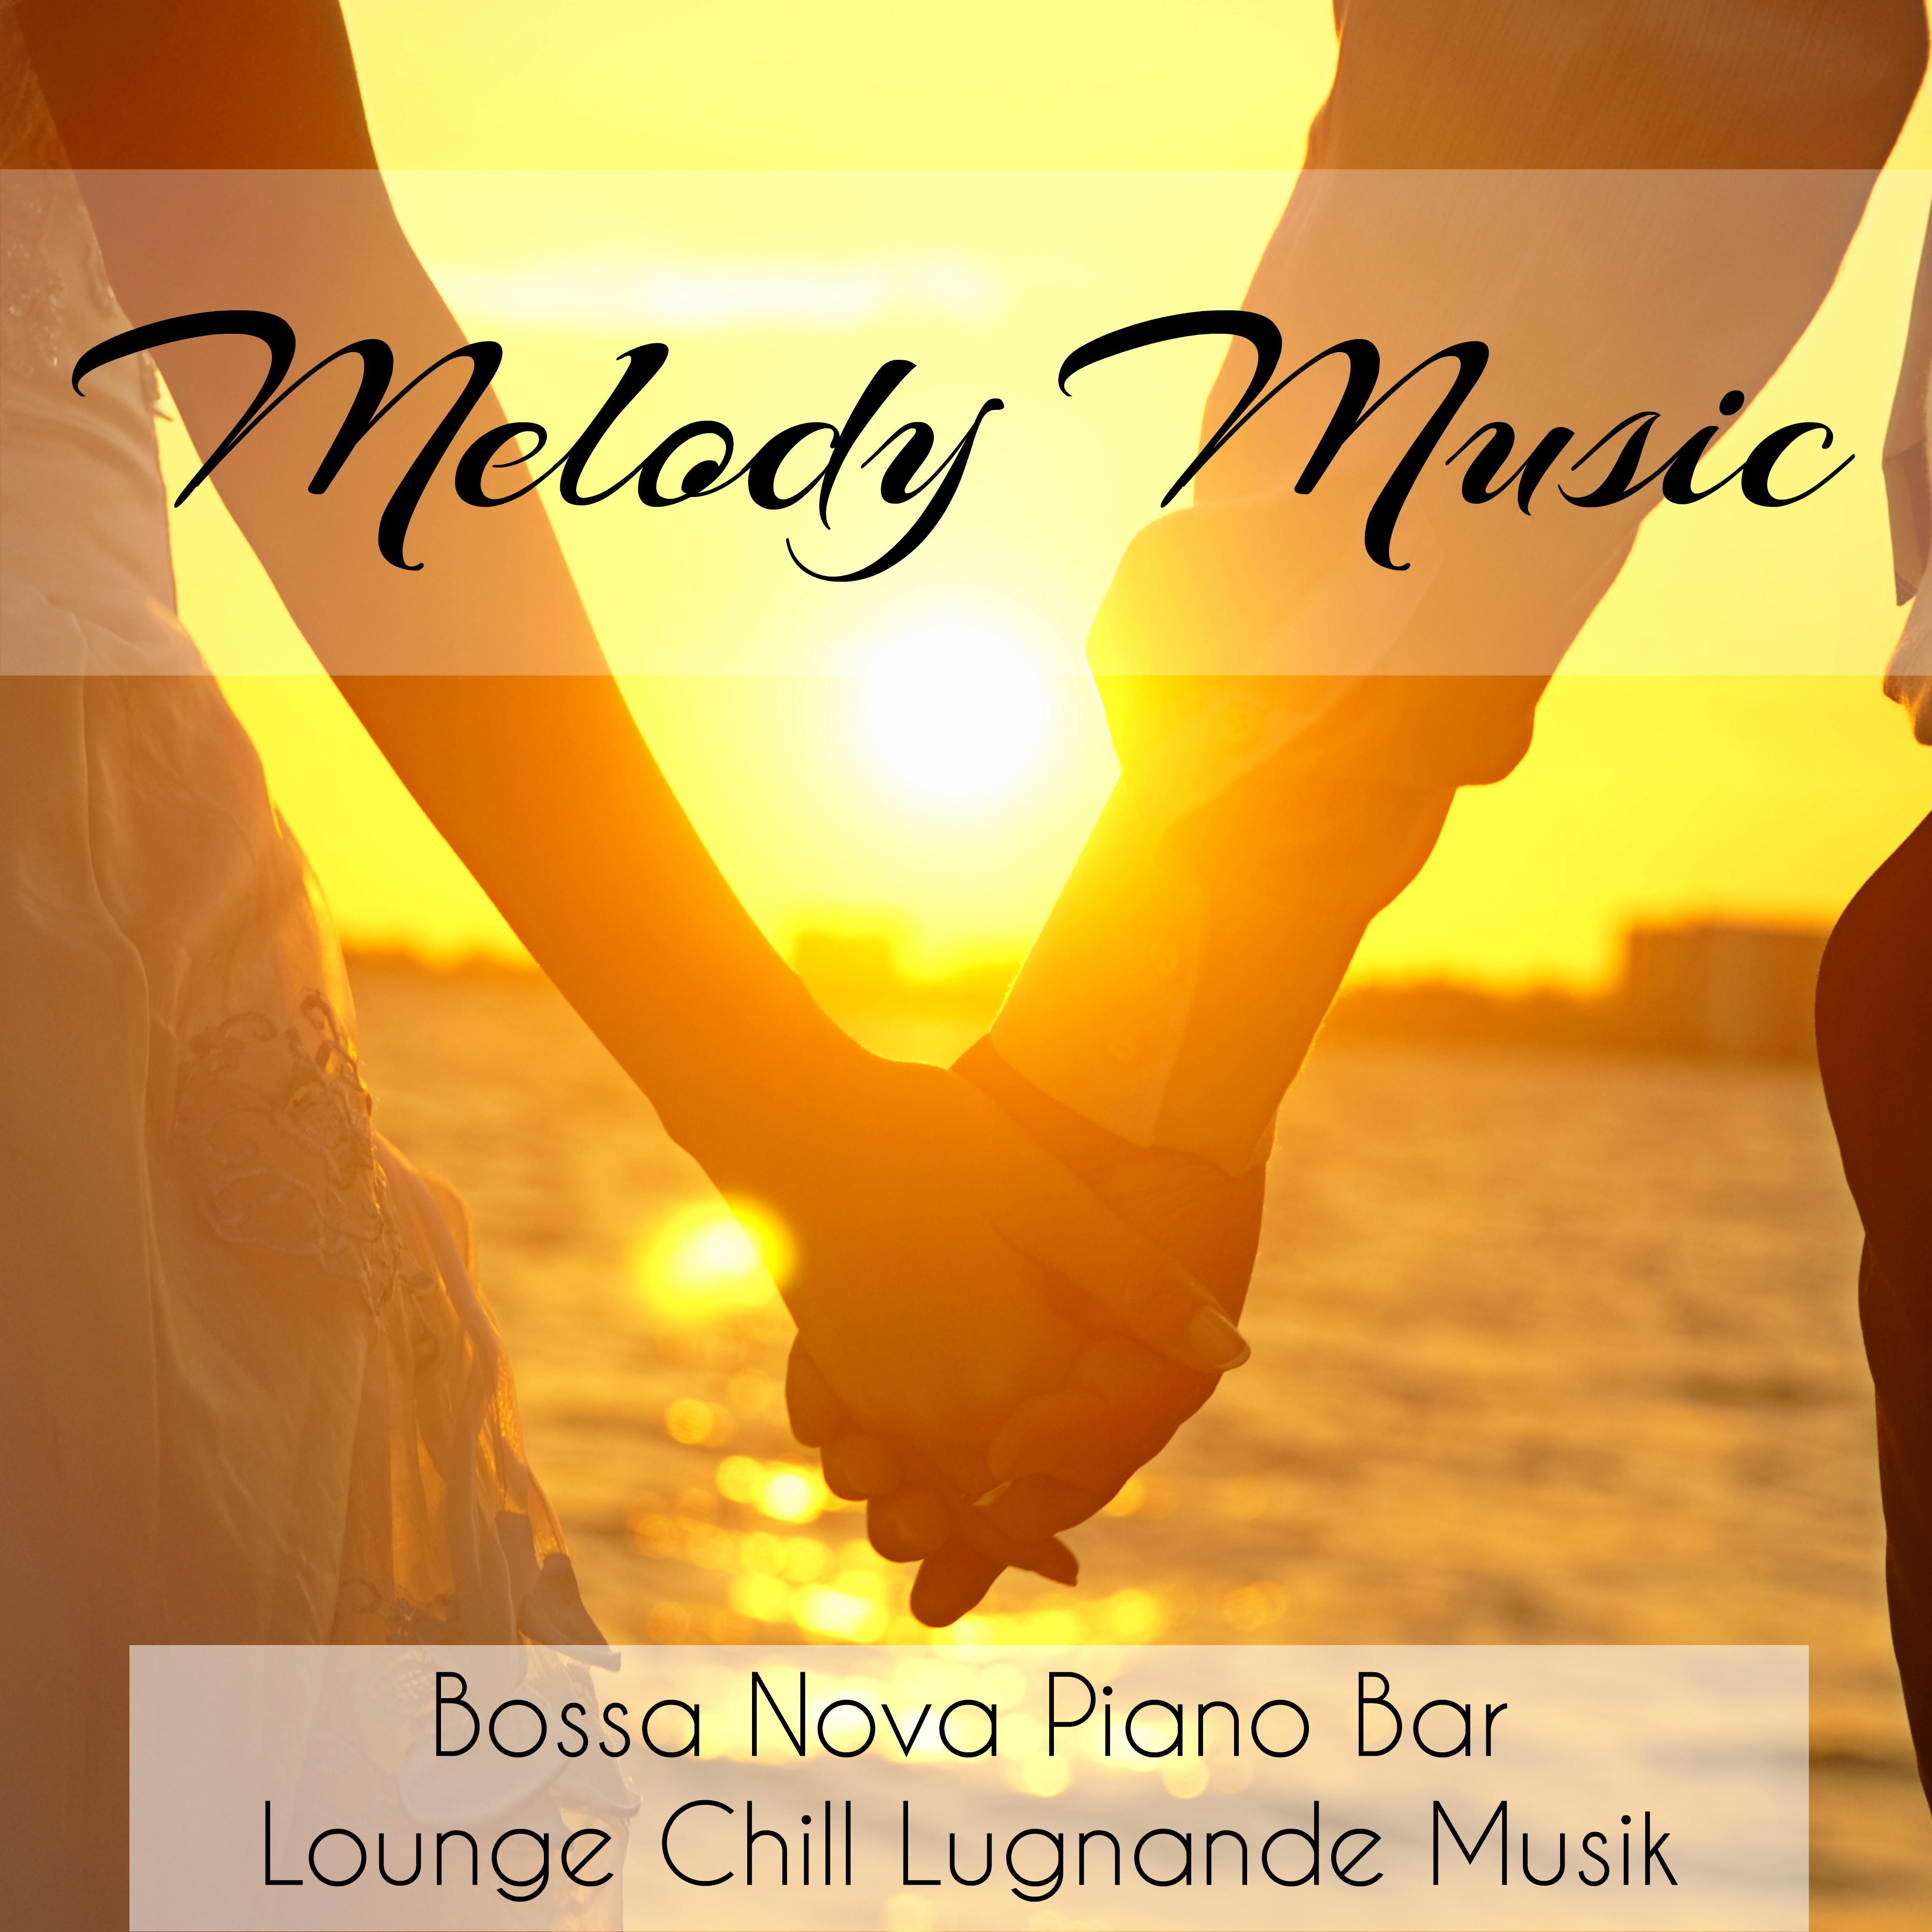 Melody Music - Bossa Nova Piano Bar Lounge Chillout Lugnande Musik för Starka Känslor Djup Meditation och Tankar om Kärlek